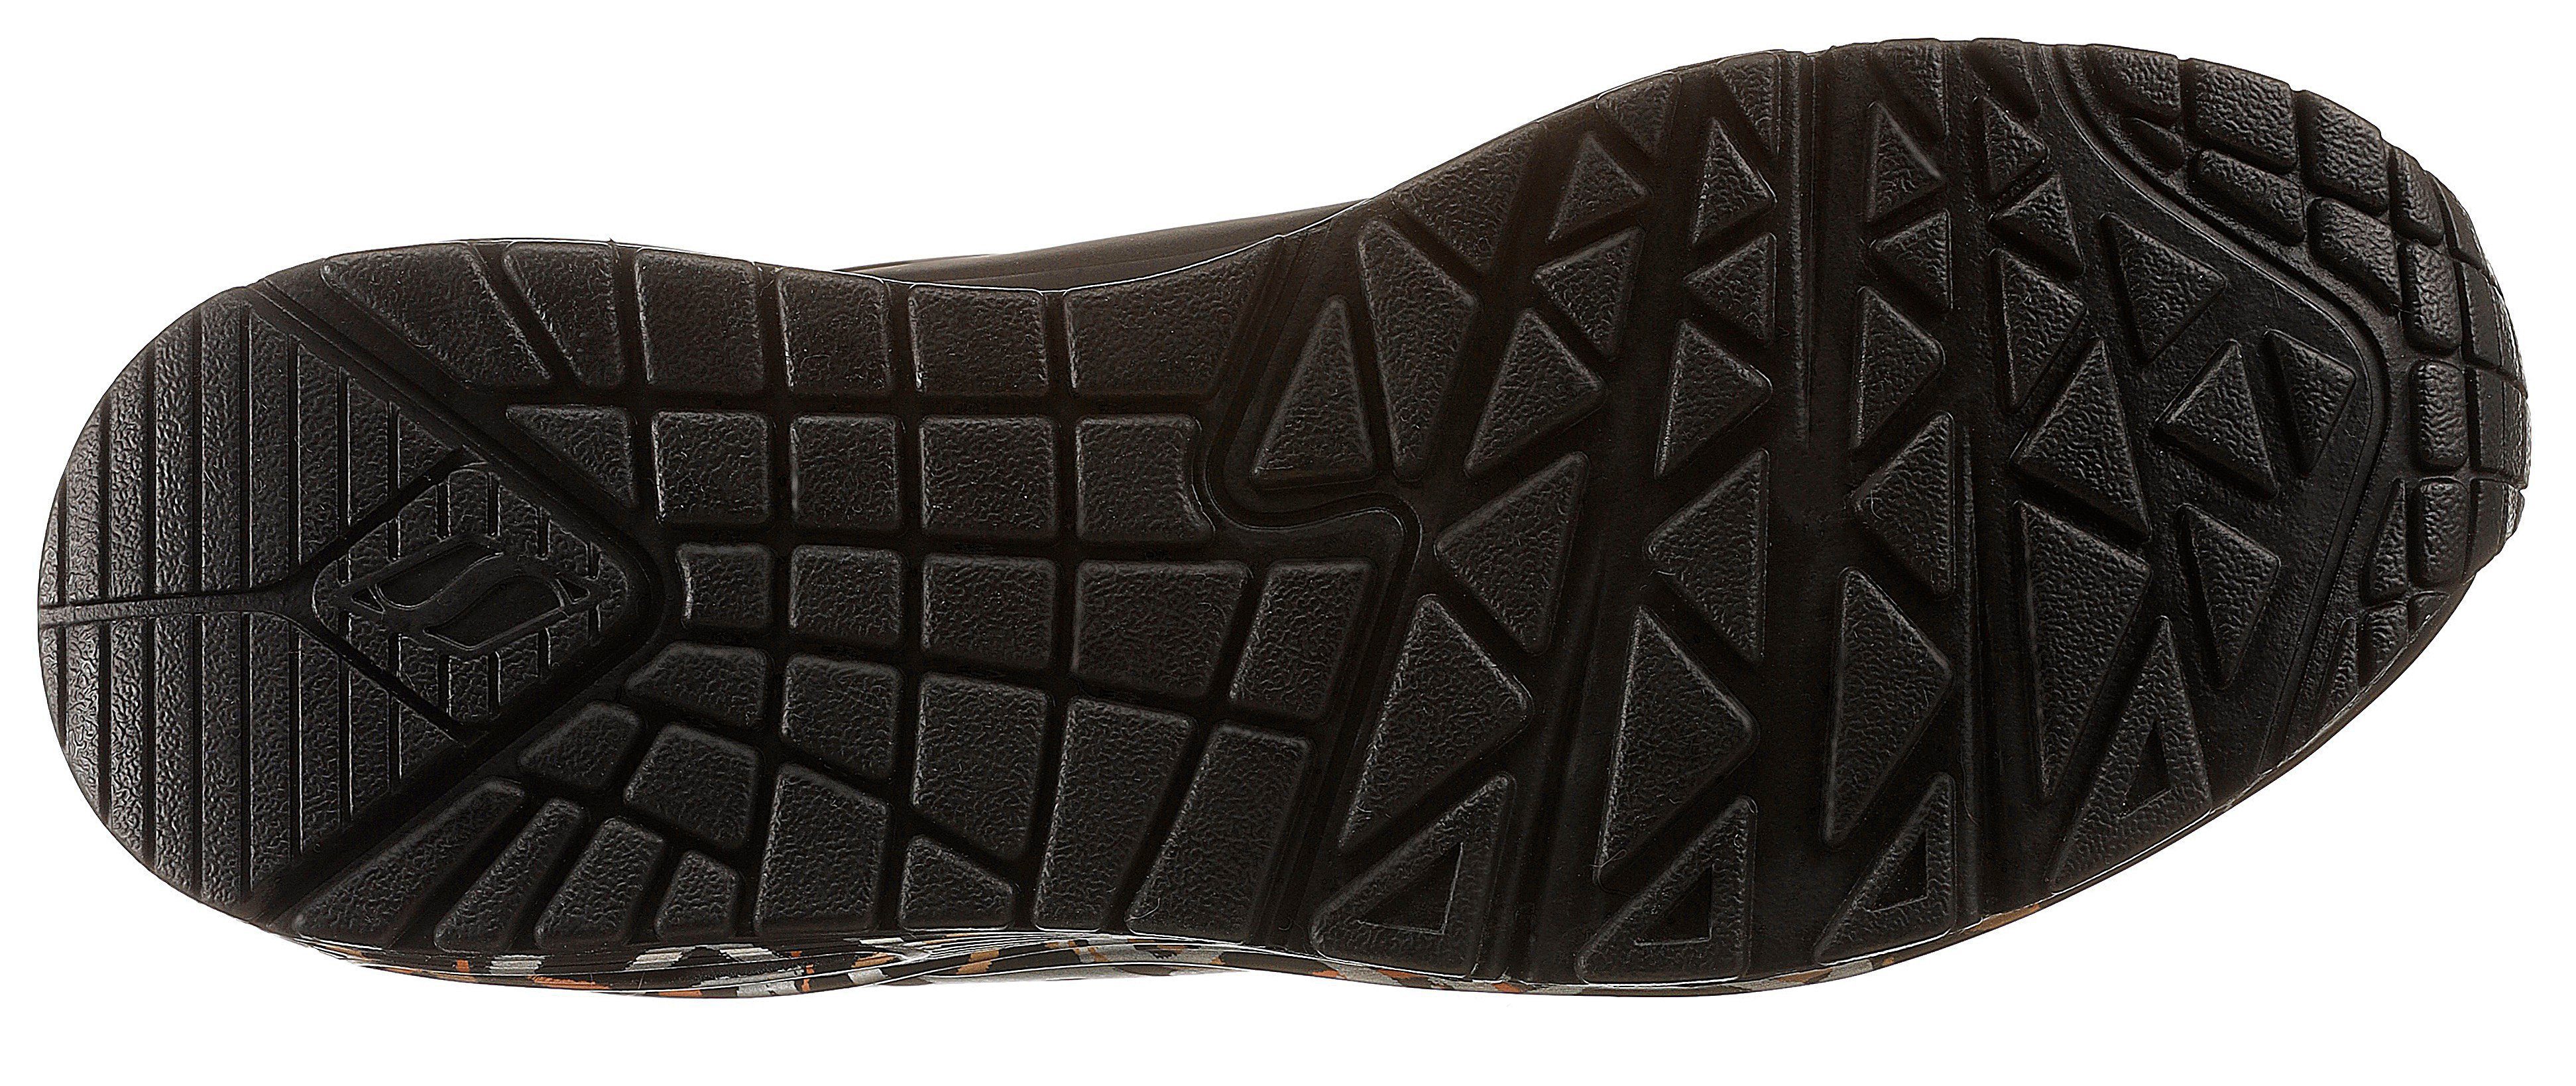 LOVE Skechers schwarz trendigen Sneaker UNO mit Metallic-Print METALLIC -